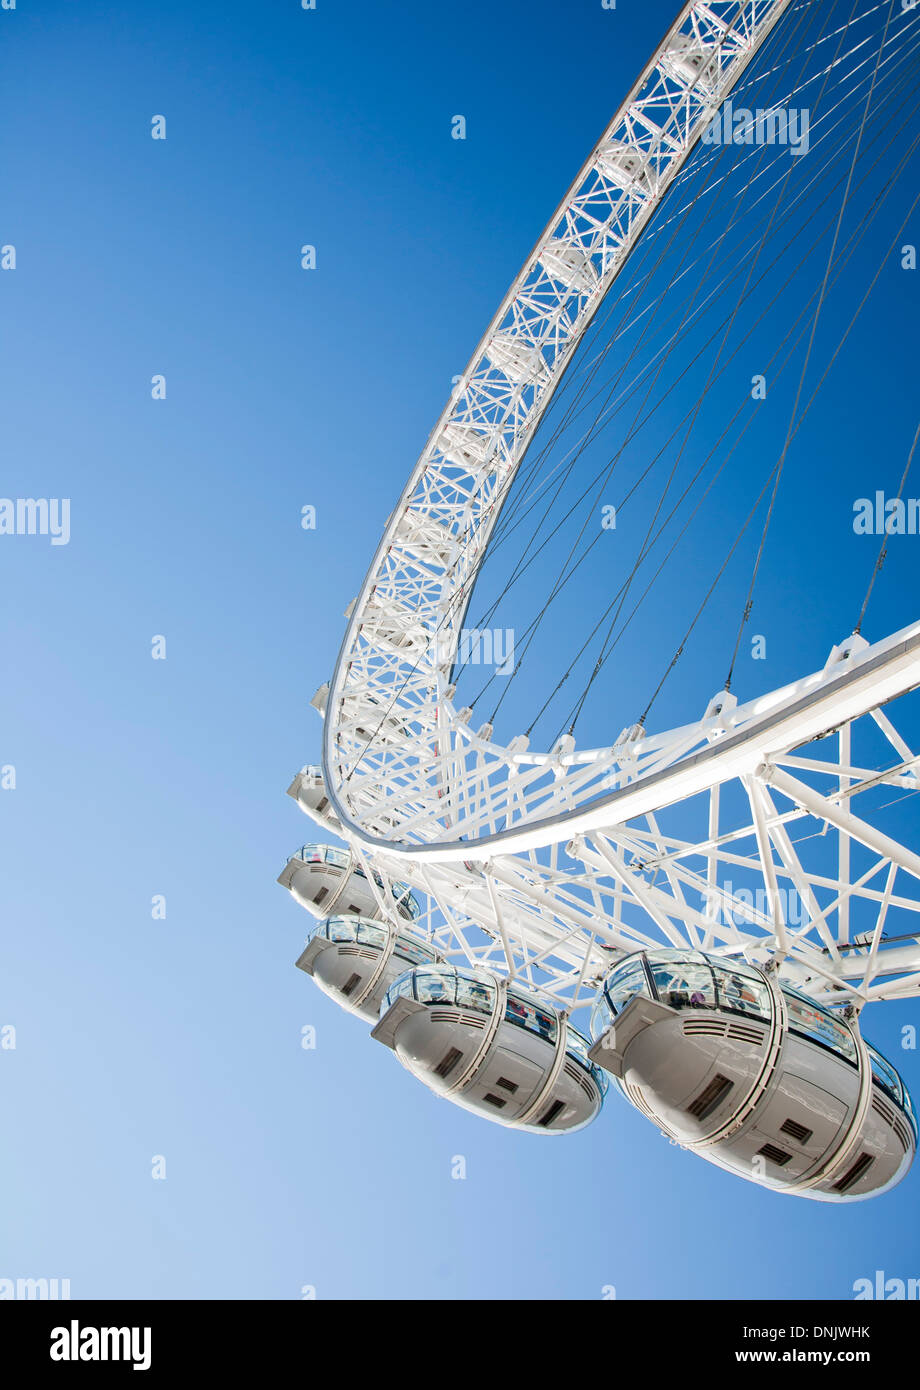 Dettaglio del London Eye, attrazione turistica di Londra, Inghilterra, Regno Unito Foto Stock